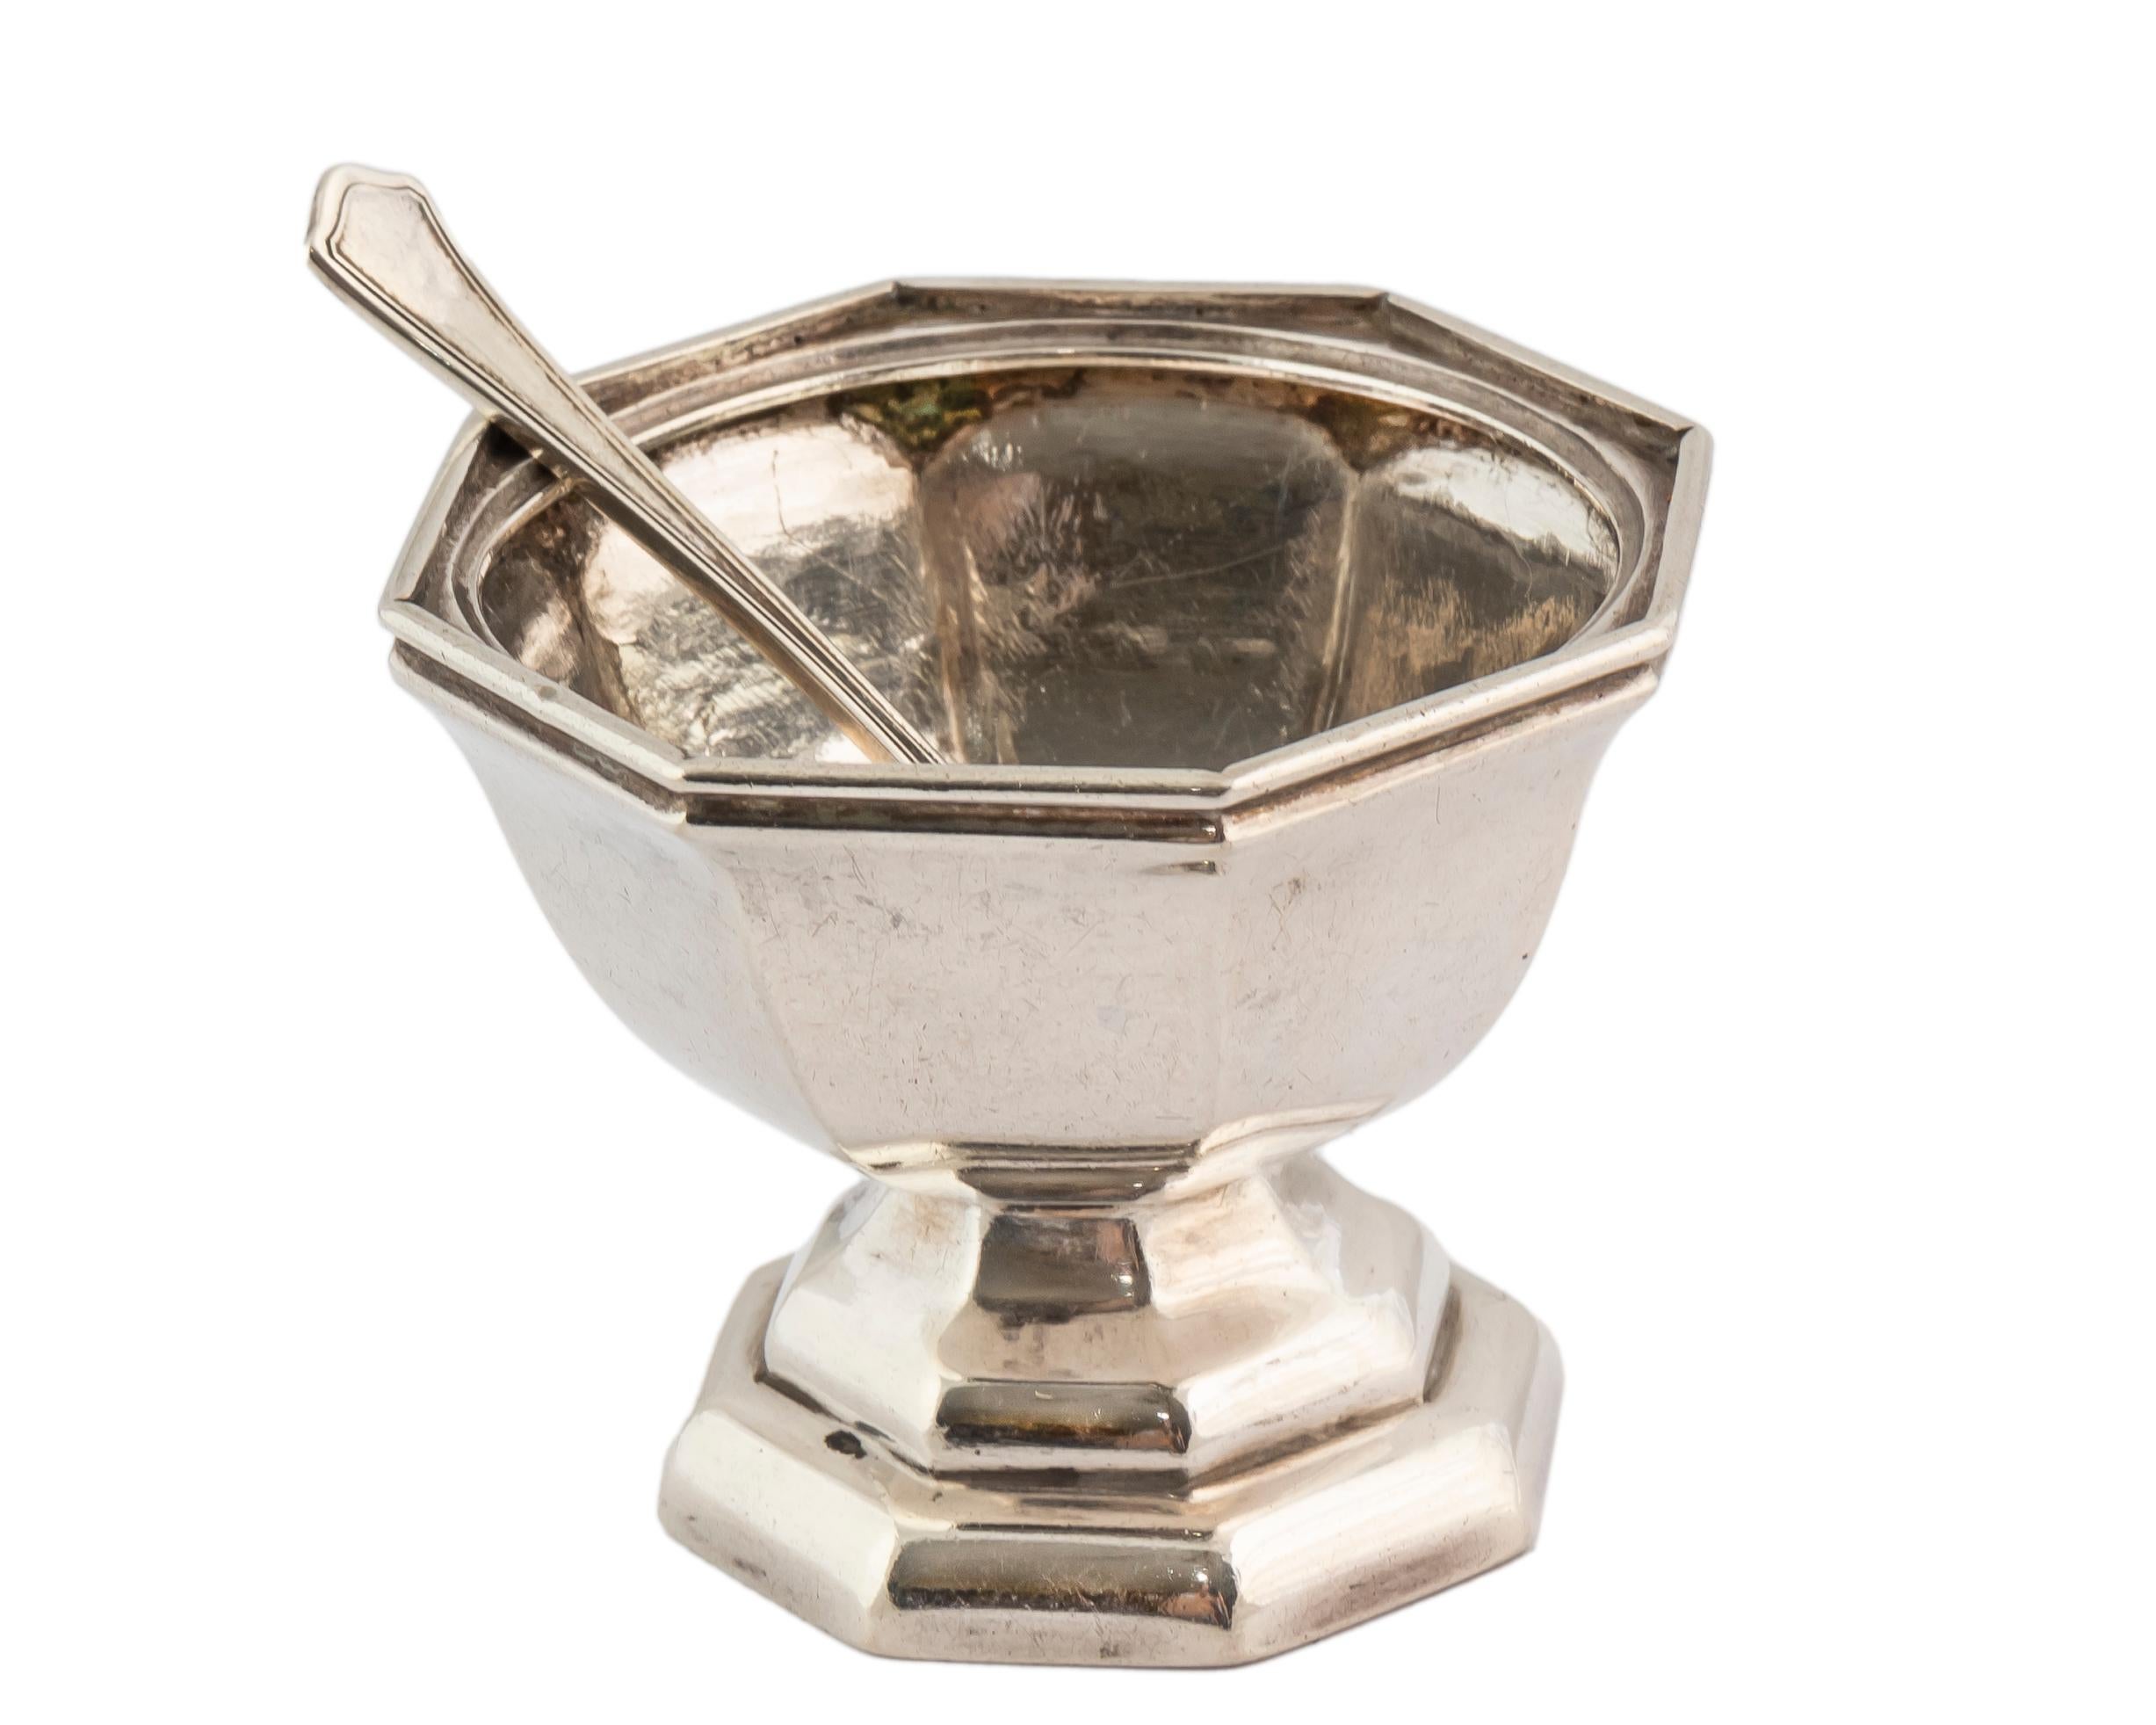 Charmante achteckige holländische Miniaturschüssel, möglicherweise nach dem Vorbild einer im 18. Jahrhundert in den Niederlanden eingeführten Zuckerdose, auf achteckigem Sockel, aus dem Jahr 1918, zusammen mit einem winzigen Silberlöffel.  

In den